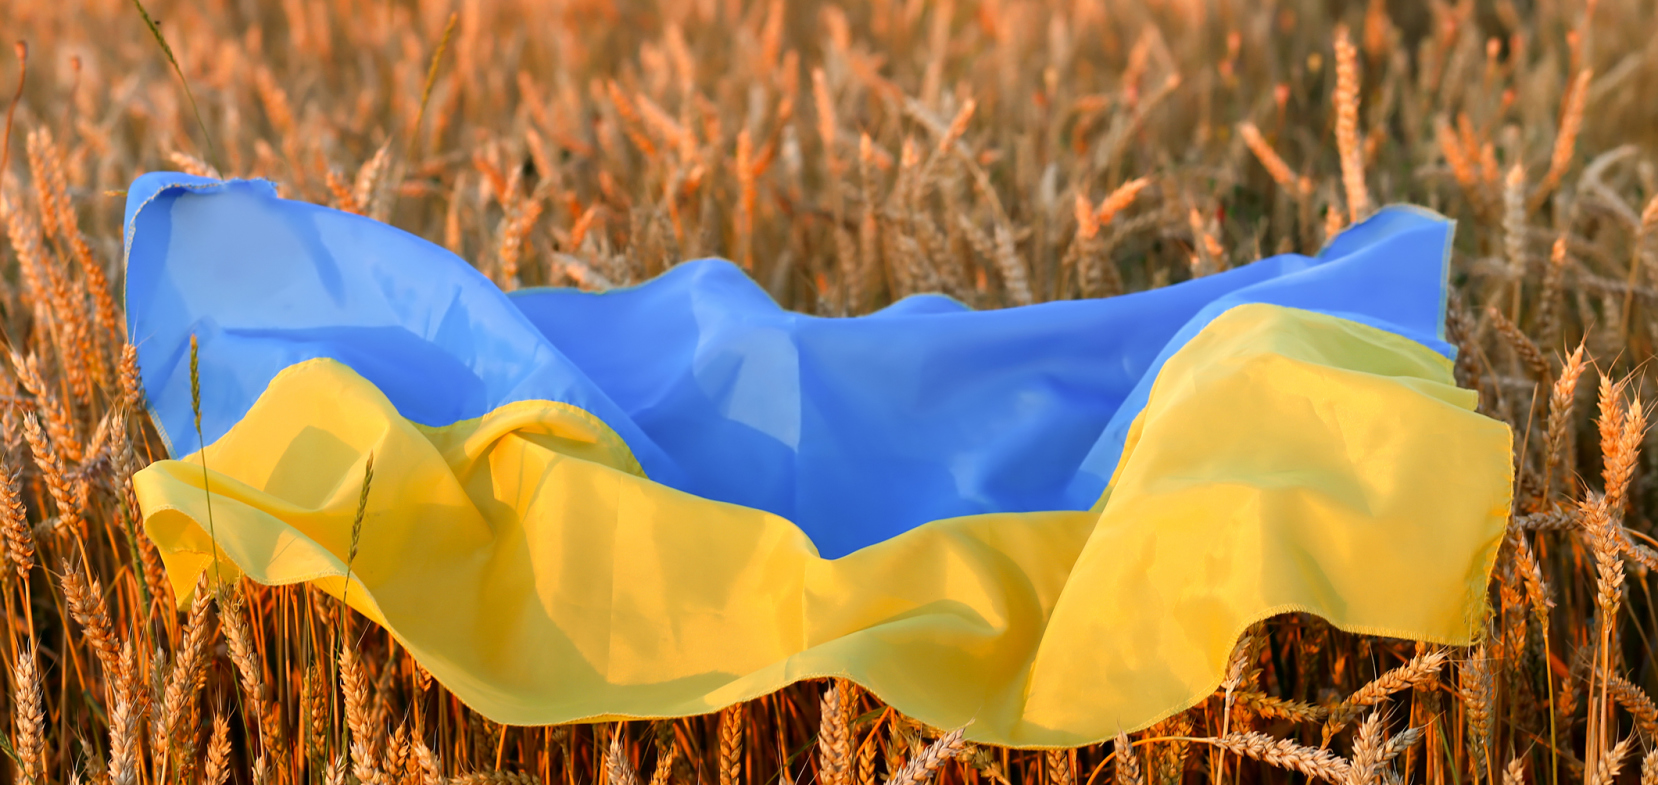 Ukrainekrieg und Welternährung 24. Mai 2022, 18:00 bis 19:30 Uhr online